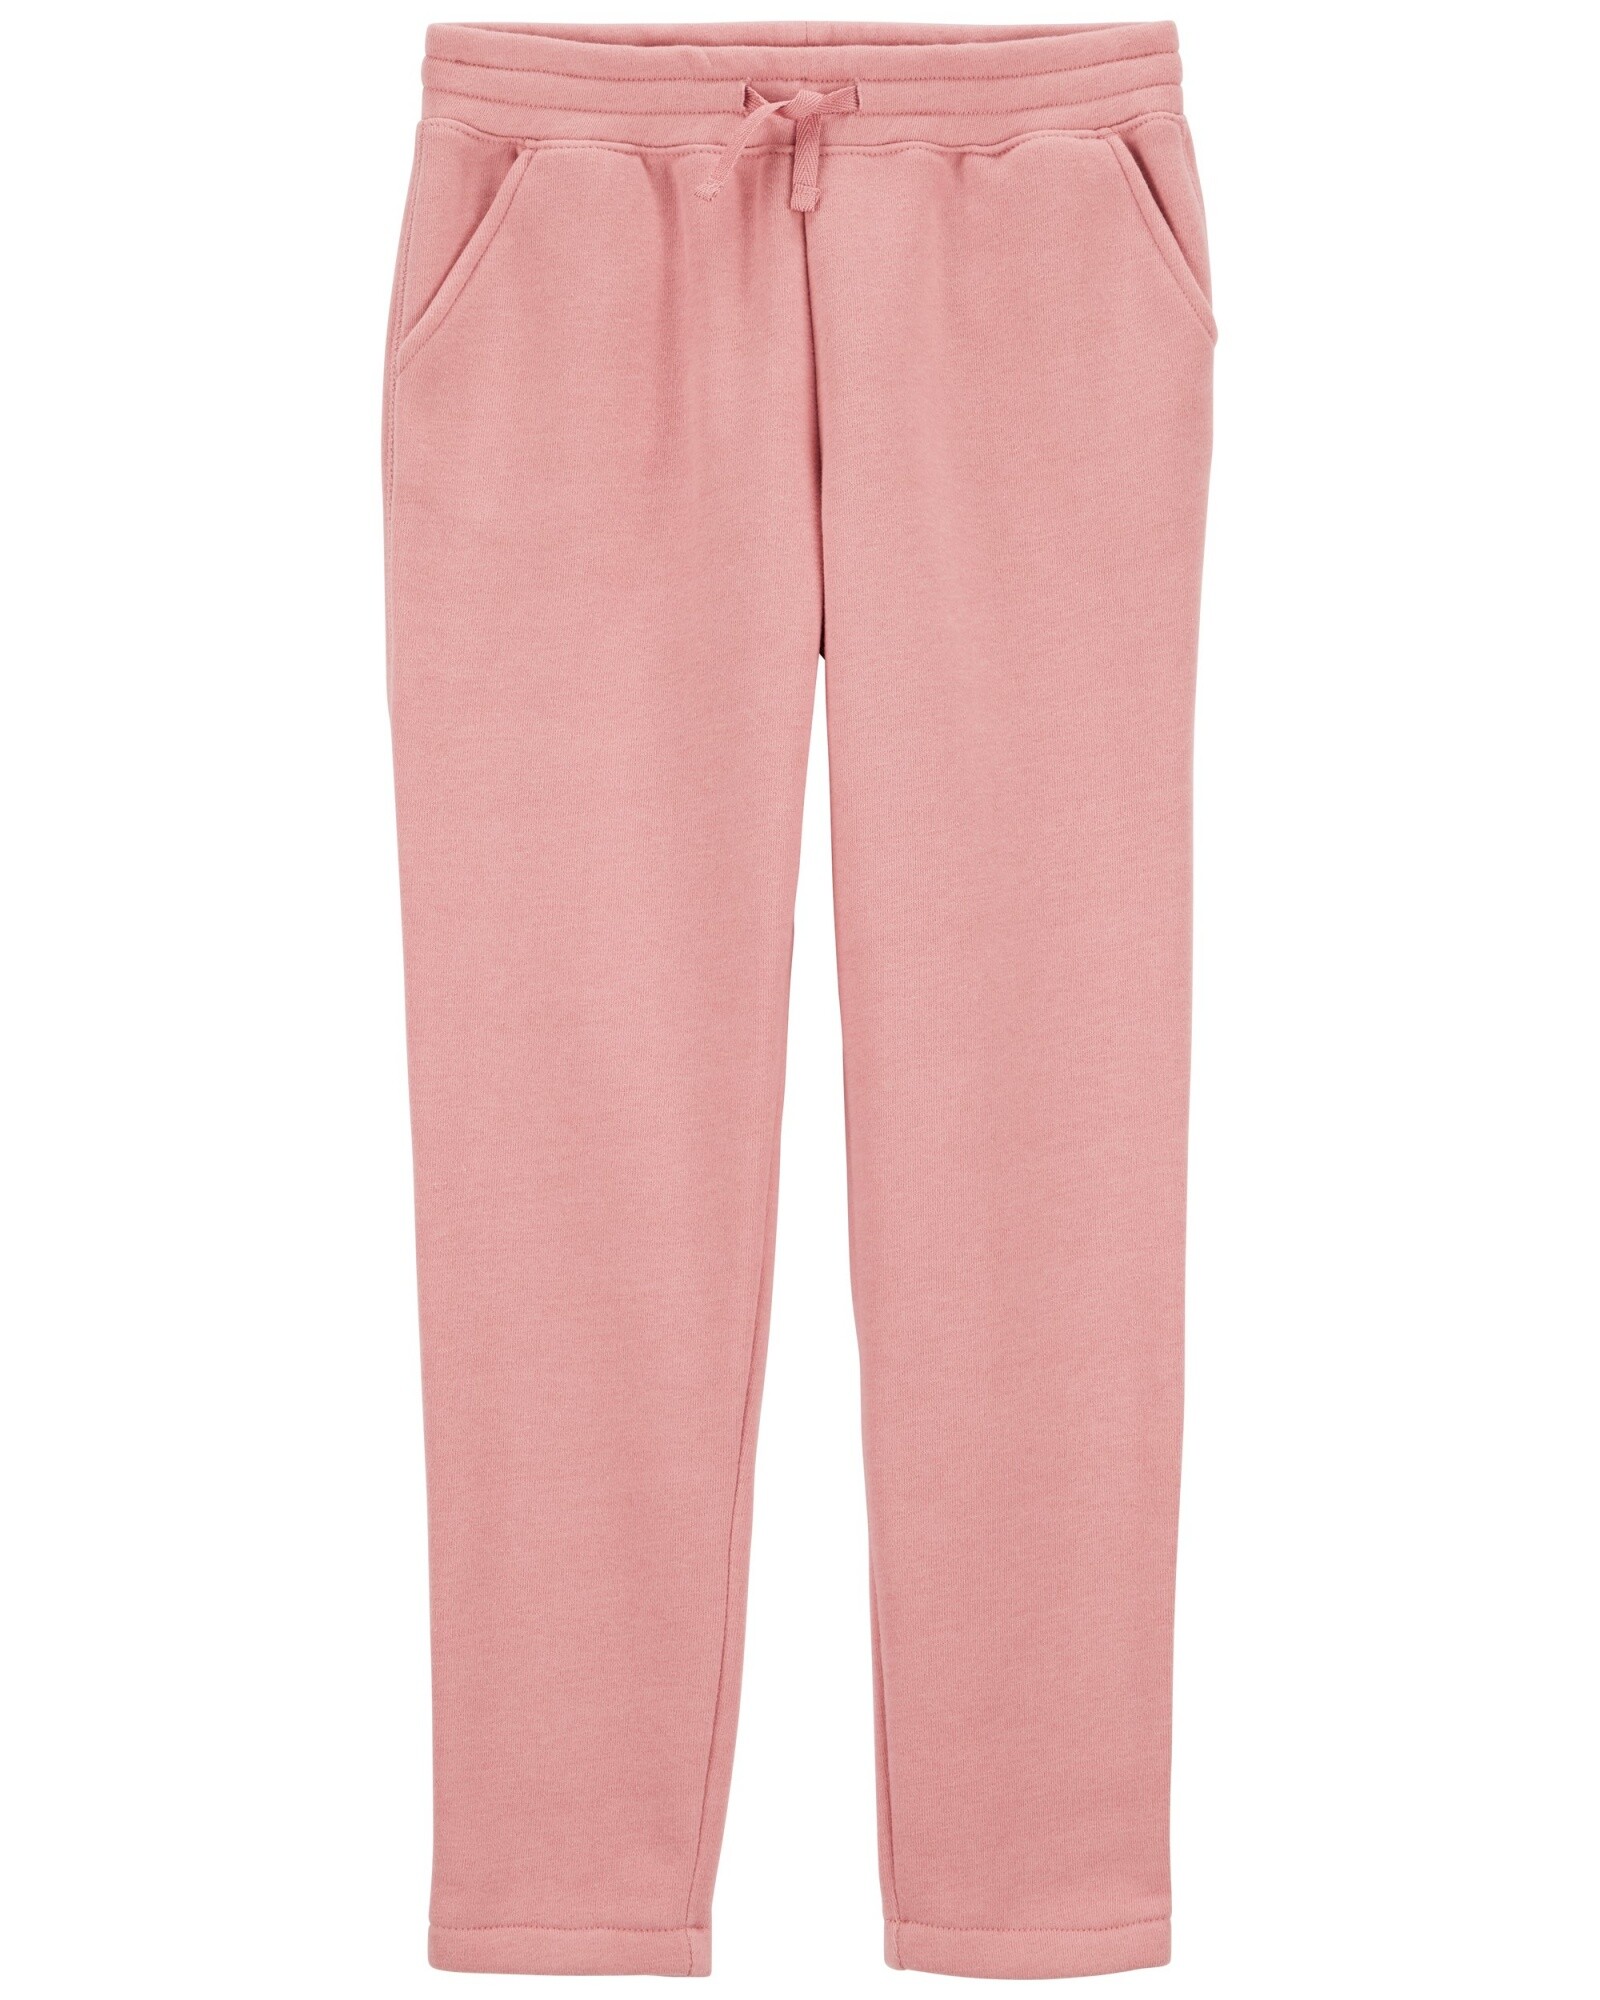 Pantalón deportivo de algodón, rosado Sin color